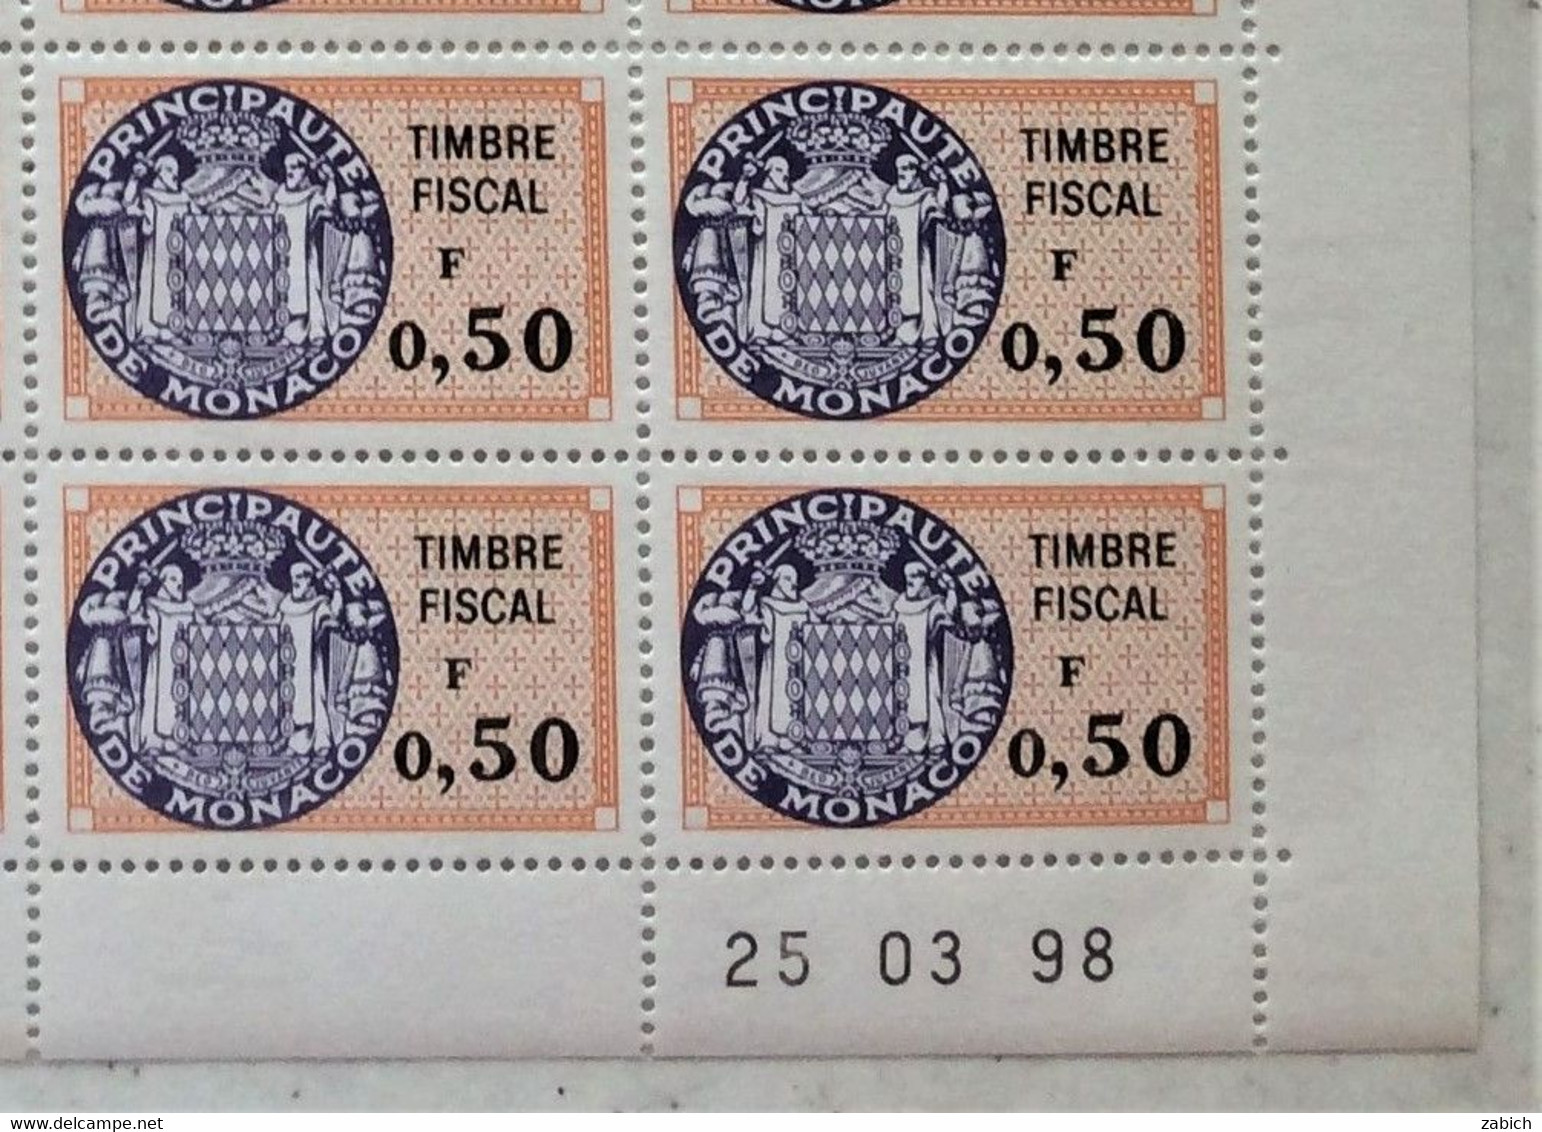 FISCAUX MONACO SERIE UNIFIEE  Feuille 50 Timbres (**) Du N°88 A 0F50  Orange Et Violet  Coin Daté  25 03 88 C0TE 250€ - Fiscaux